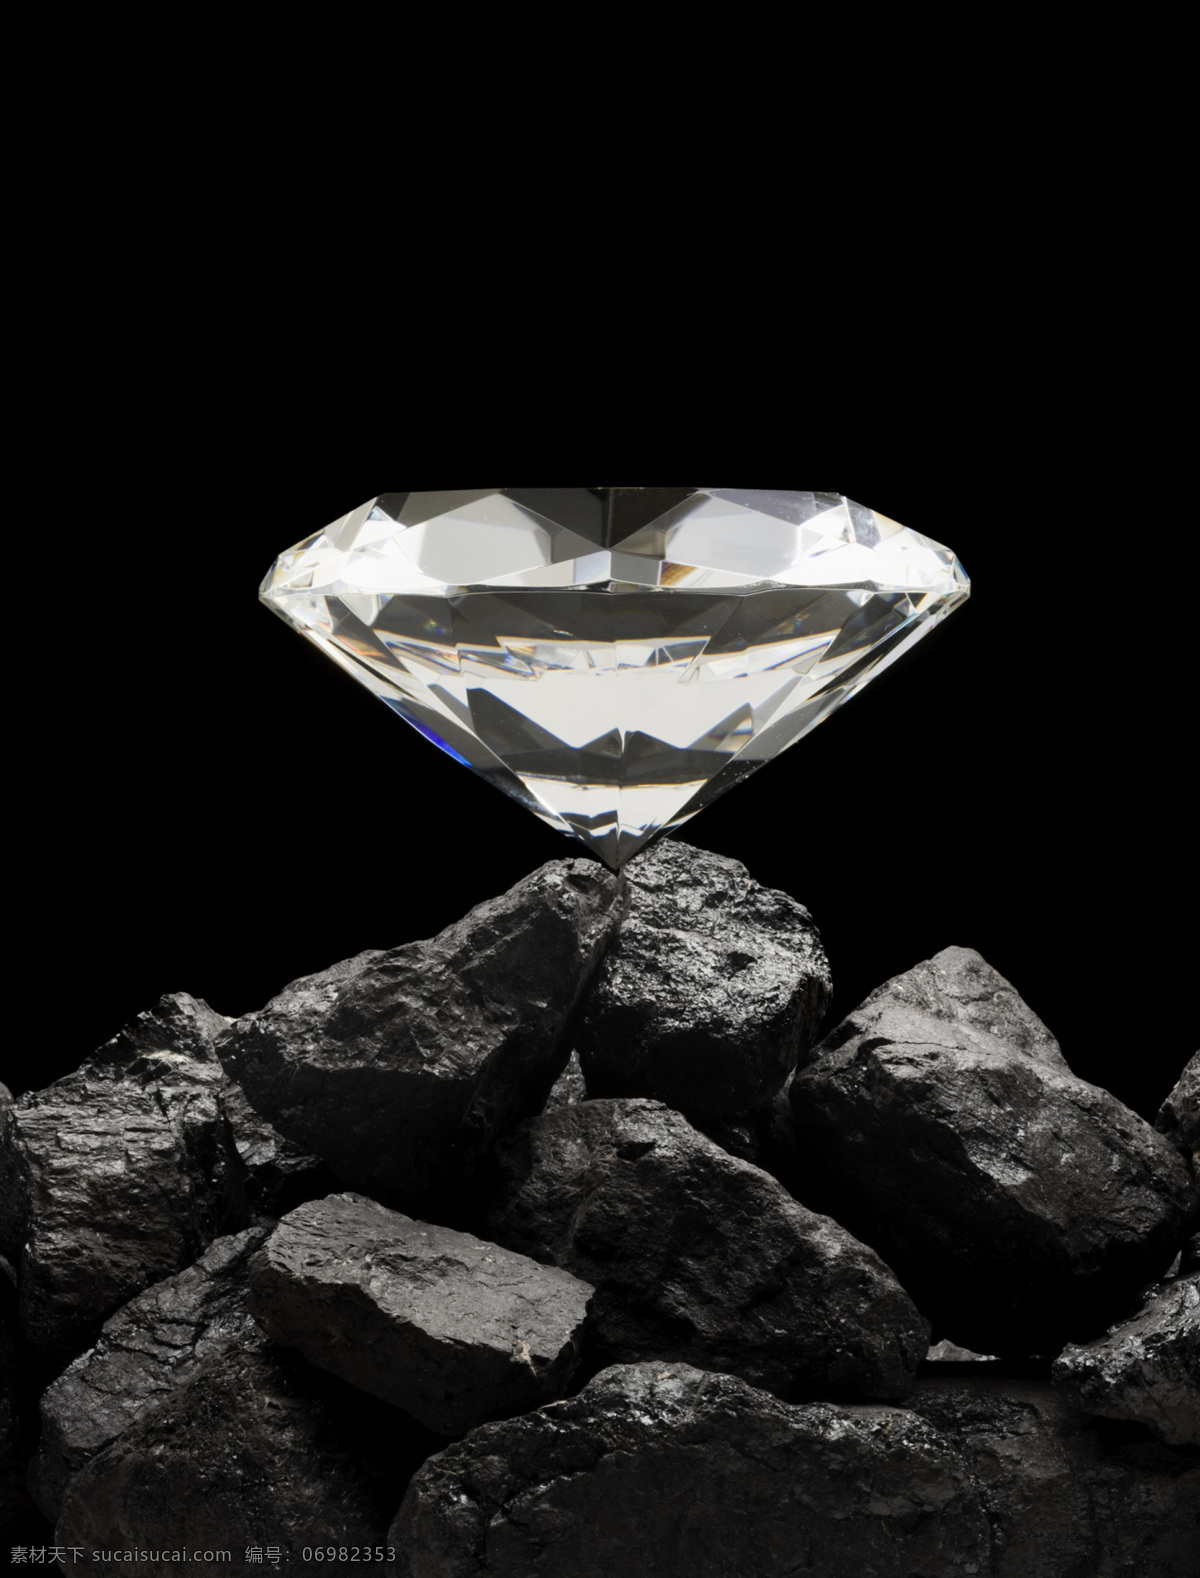 顶级 光线 华丽 精致 矿石 情调 奢侈 奢侈品 钻石 透明 奢华 尊贵 生活素材 生活百科 淘宝素材 其他淘宝素材